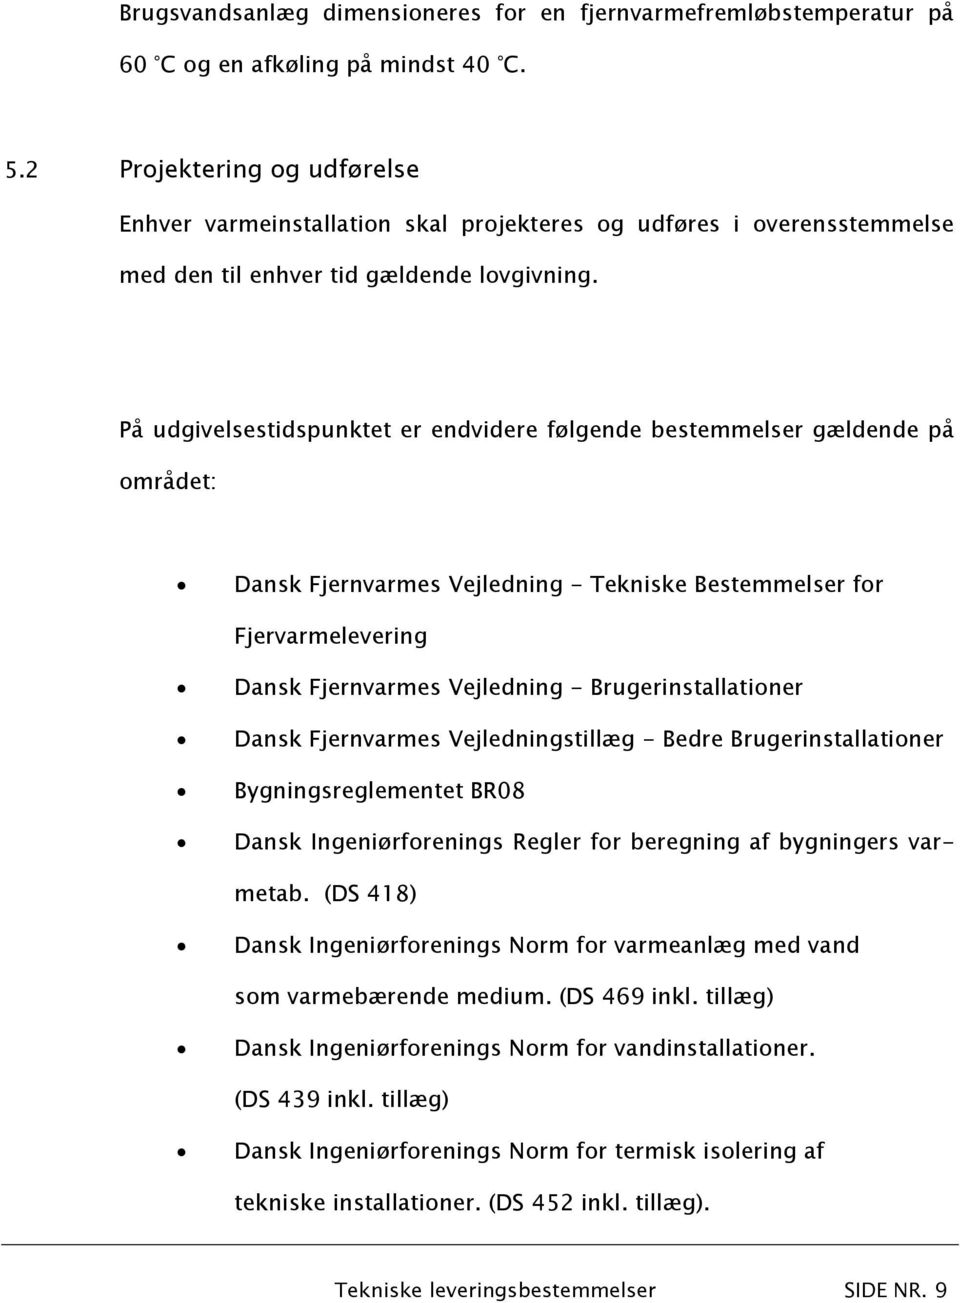 På udgivelsestidspunktet er endvidere følgende bestemmelser gældende på området: Dansk Fjernvarmes Vejledning - Tekniske Bestemmelser for Fjervarmelevering Dansk Fjernvarmes Vejledning -